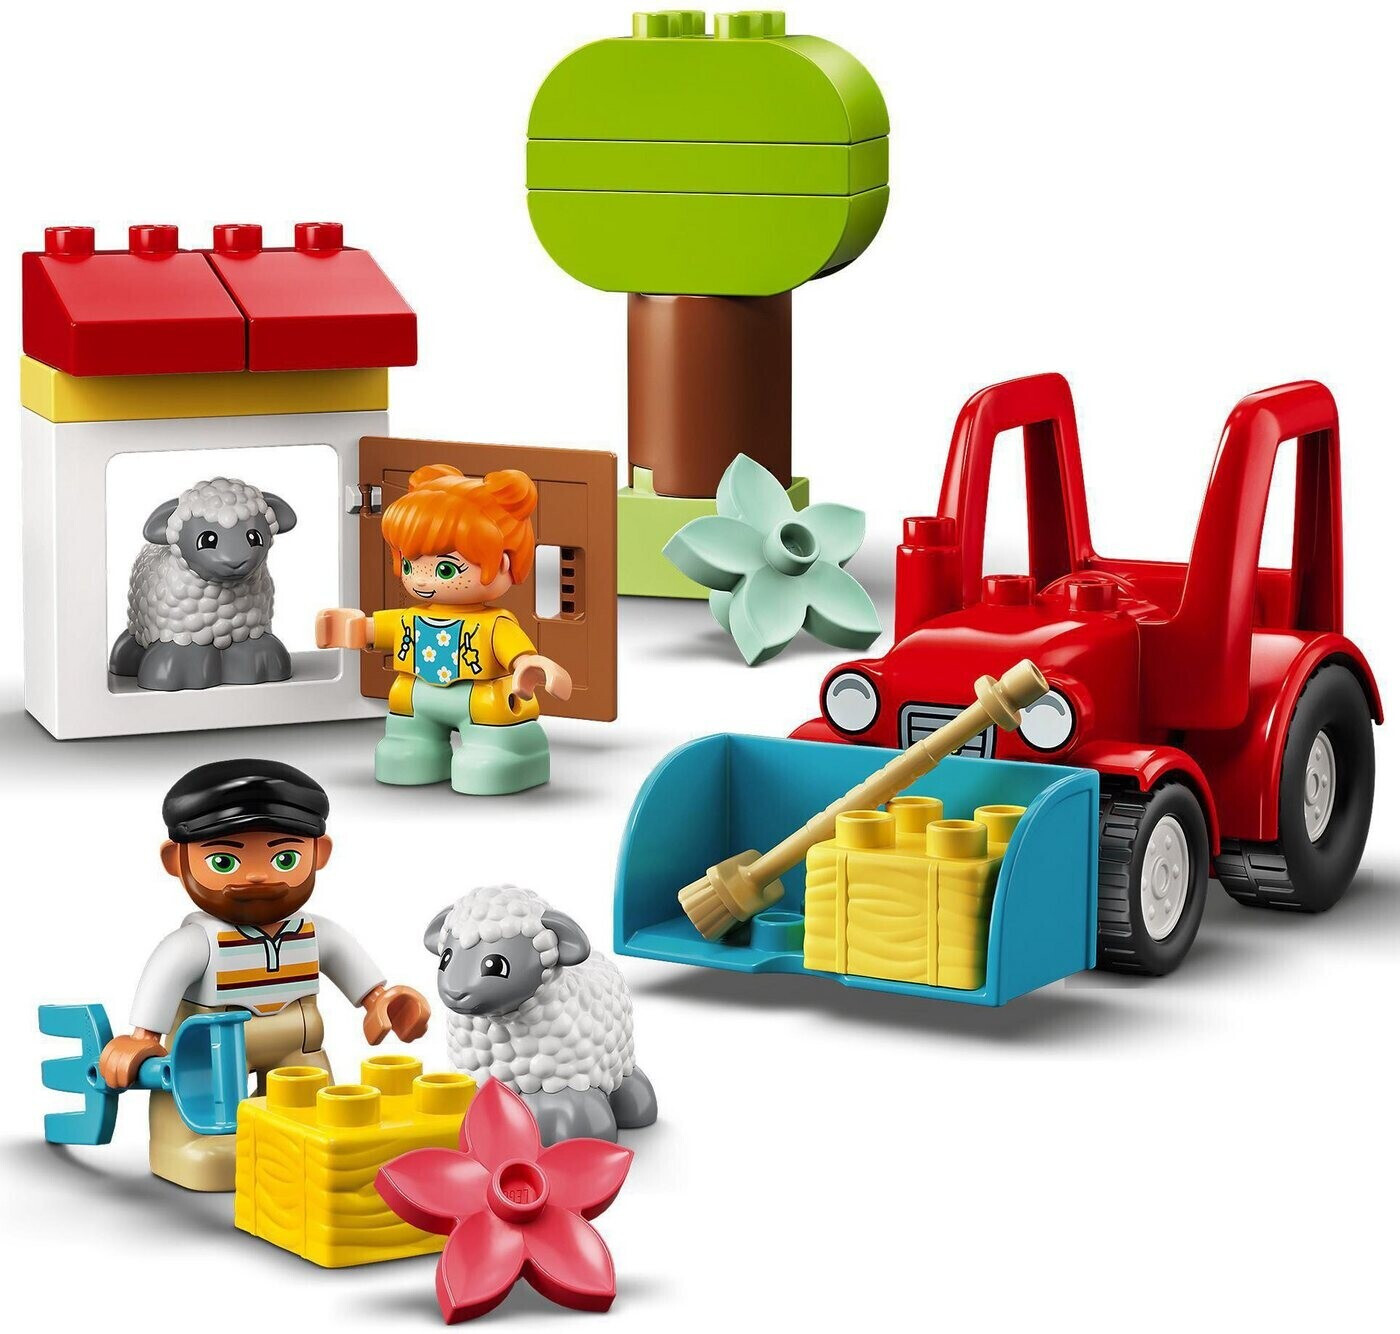 22,22 € und ab 2024 bei (10950) Preisvergleich Traktor LEGO Preise) (Februar Tierpflege |